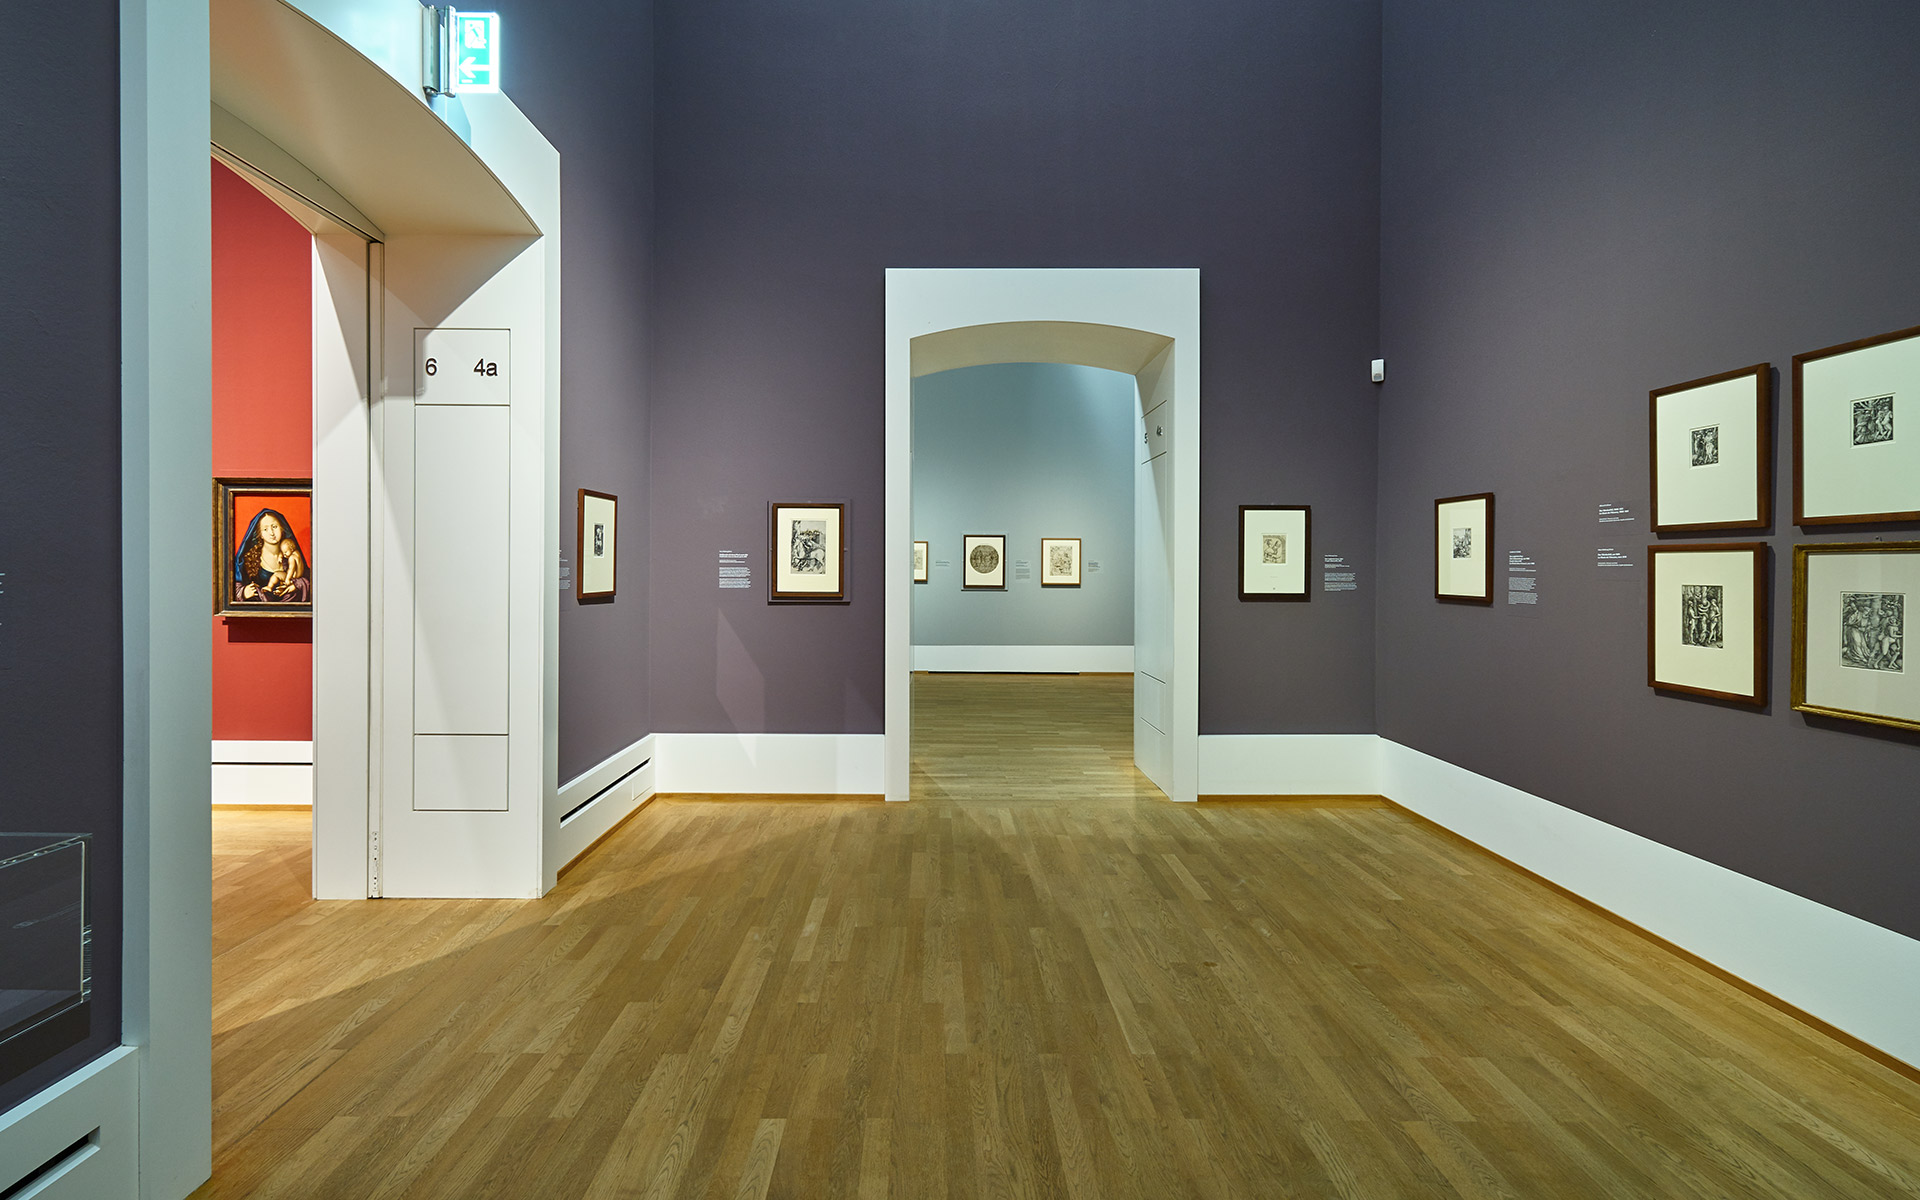 Ausstellungsansicht der Ausstellung Hans Baldung Grien. Es zeigt den Durchblick von einem Raum in den nächsten.